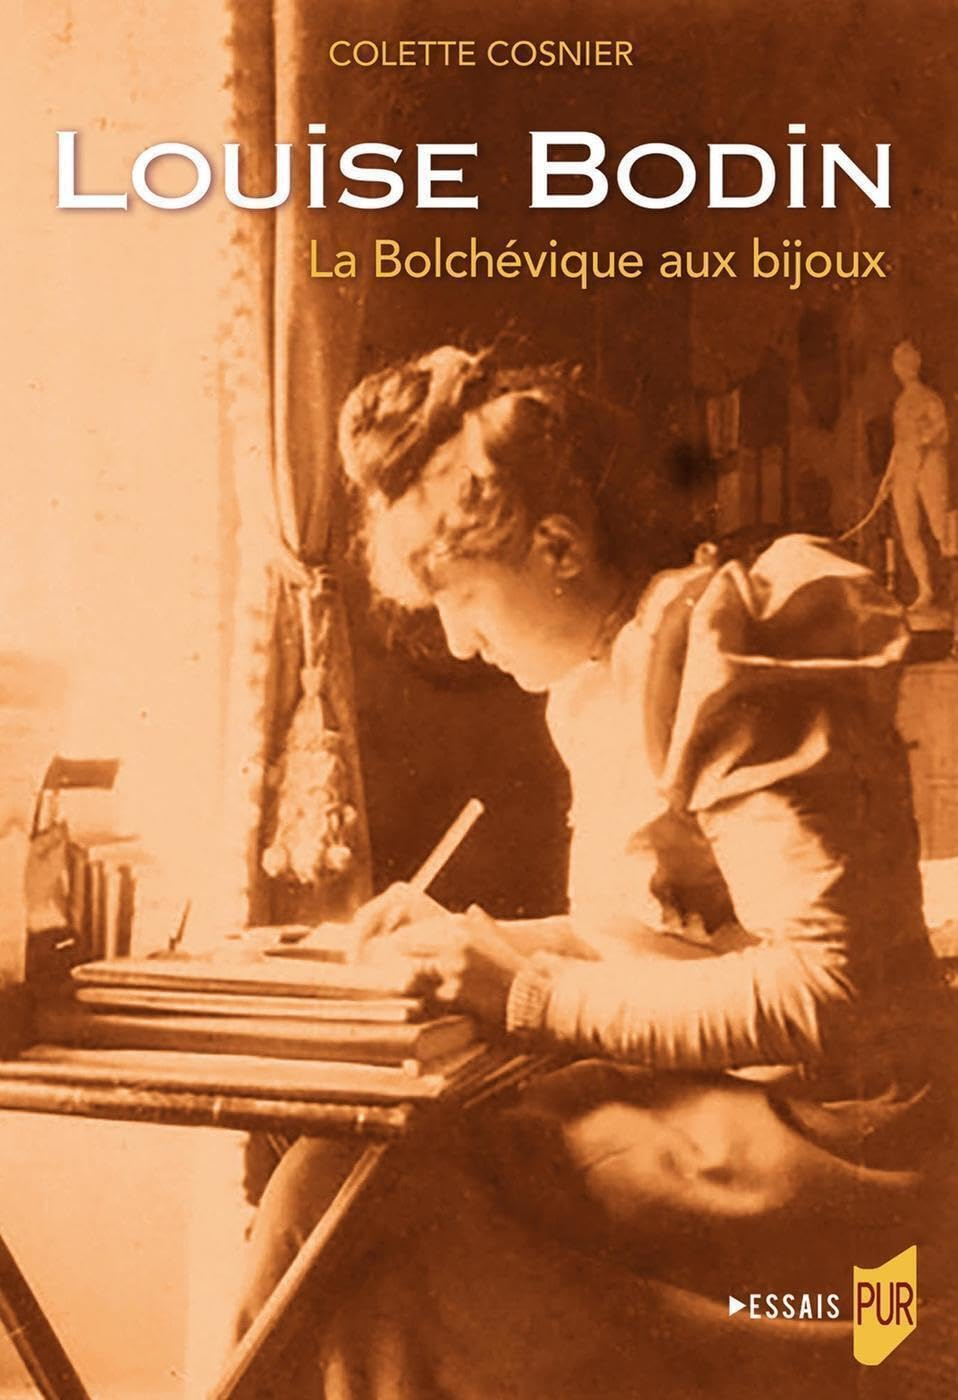 Louise Bodin : la bolchevique aux bijoux